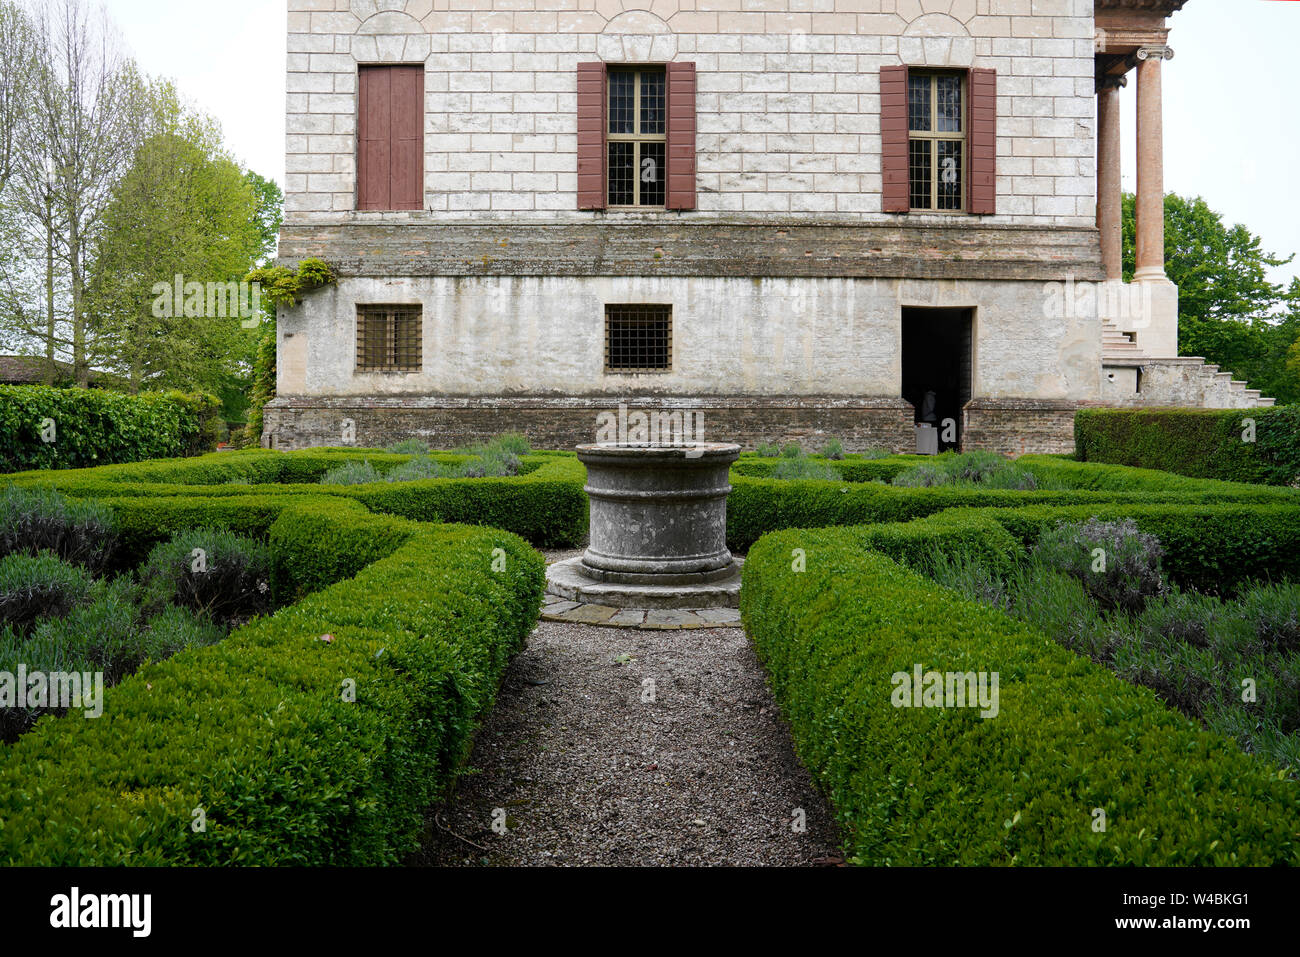 Garden side Villa Foscari called La Malcontenta, architect Andrea Palladio Stock Photo